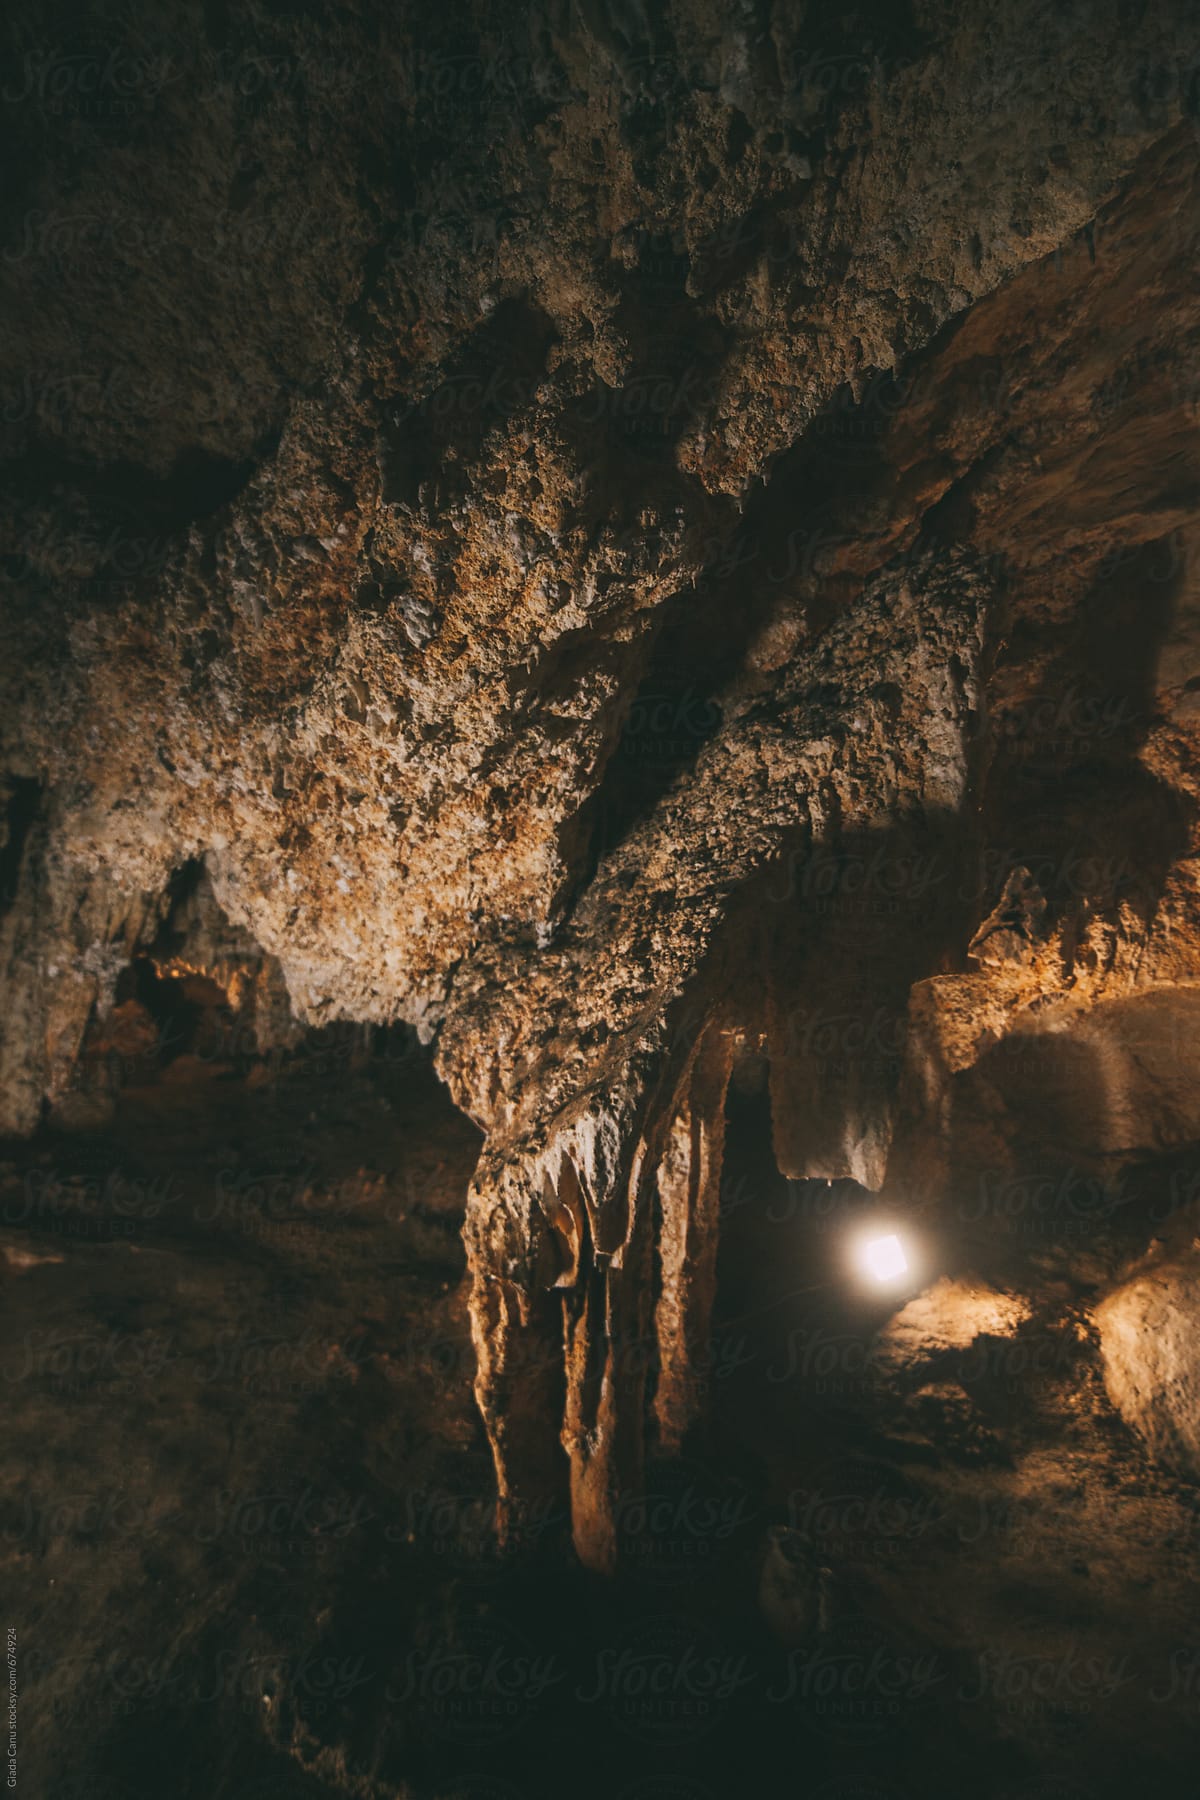 Corbeddu Cave